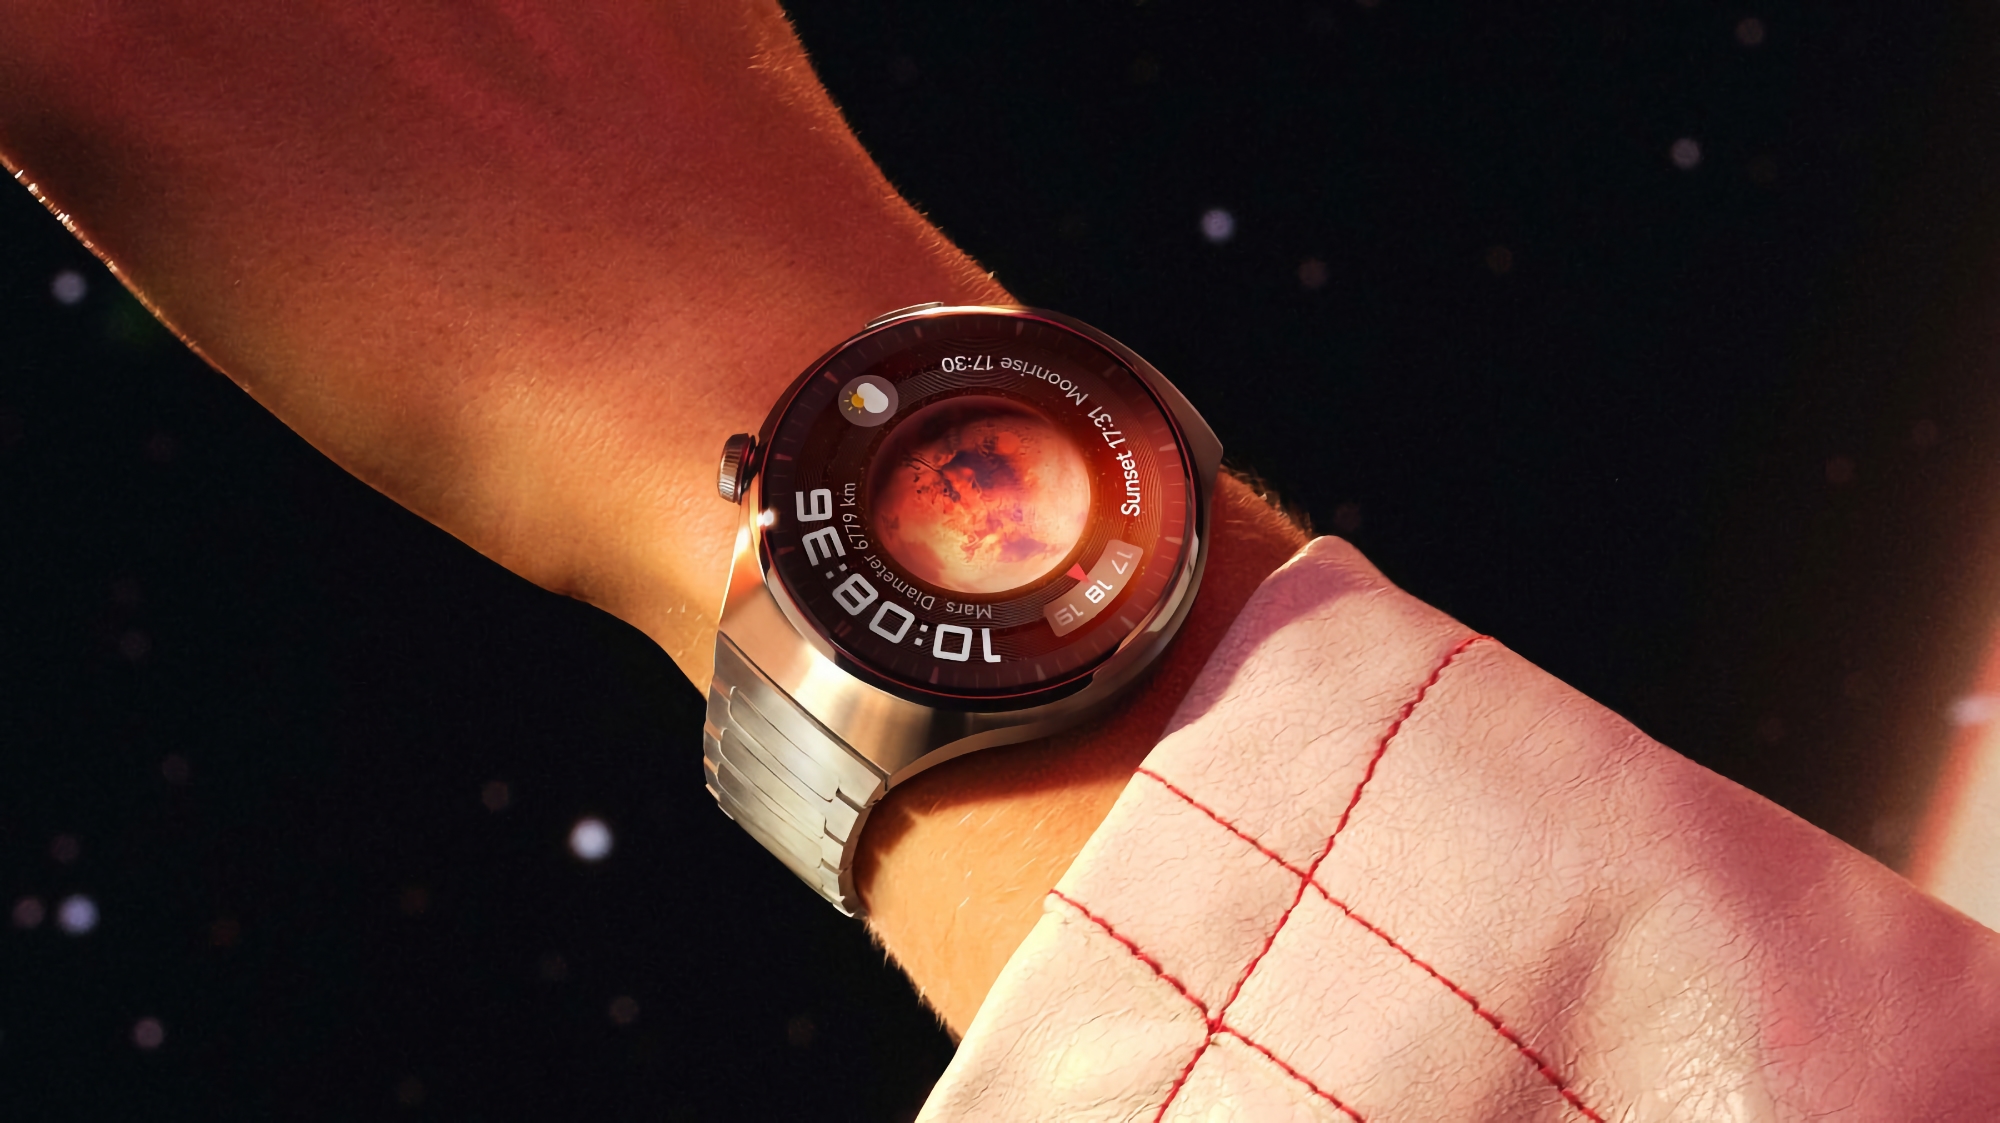 HUAWEI WATCH GT 4: el nuevo smartwatch de HUAWEI